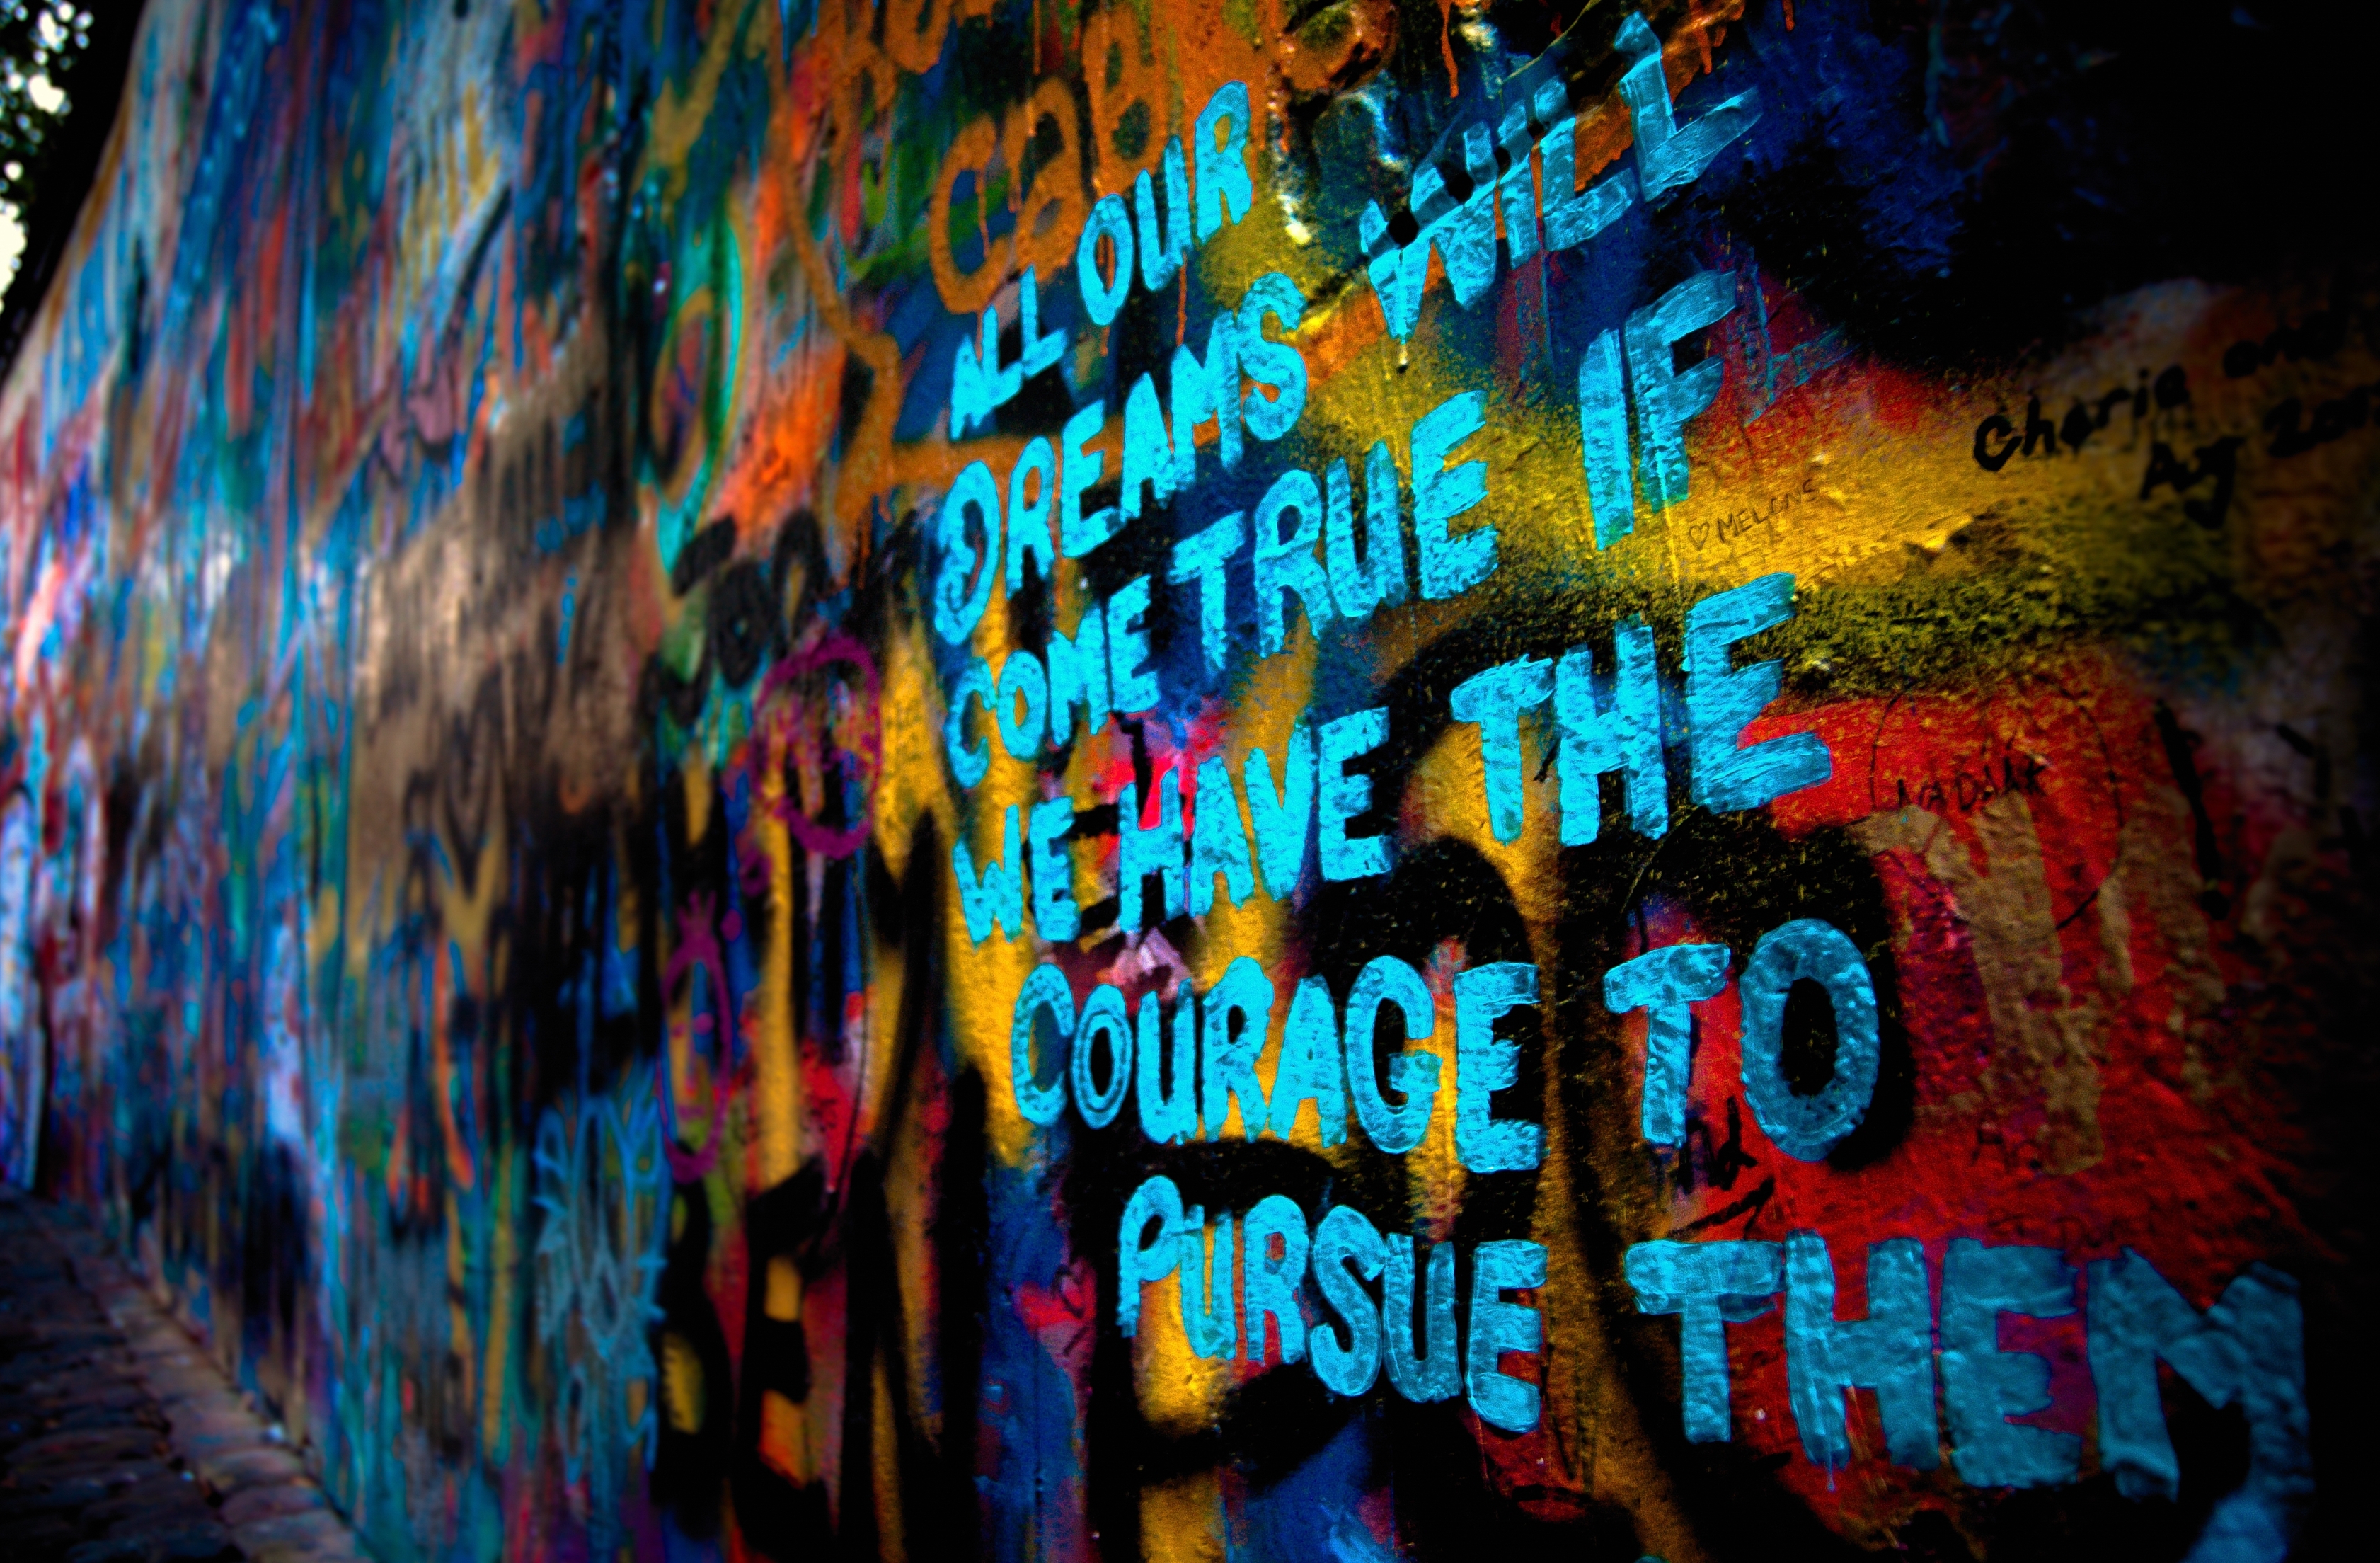 John Lennon Wall Prague Czech Republic Attractions